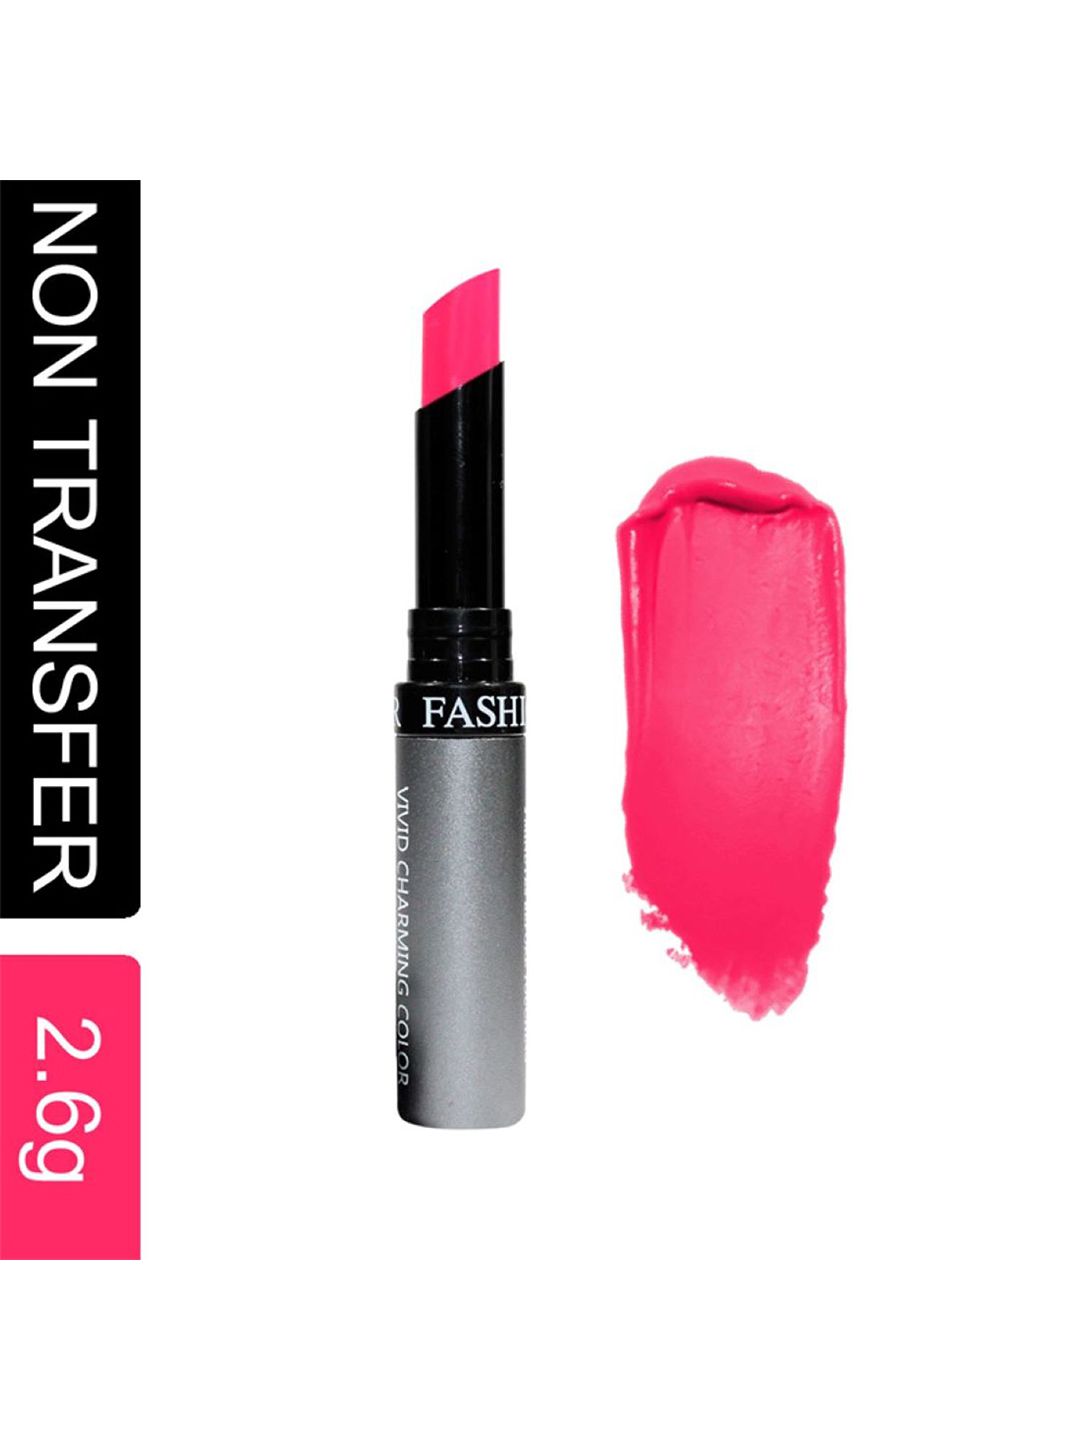 Fashion Colour Kiss Lip No Transfer Lipstick - Barbie Pink 69 Price in India